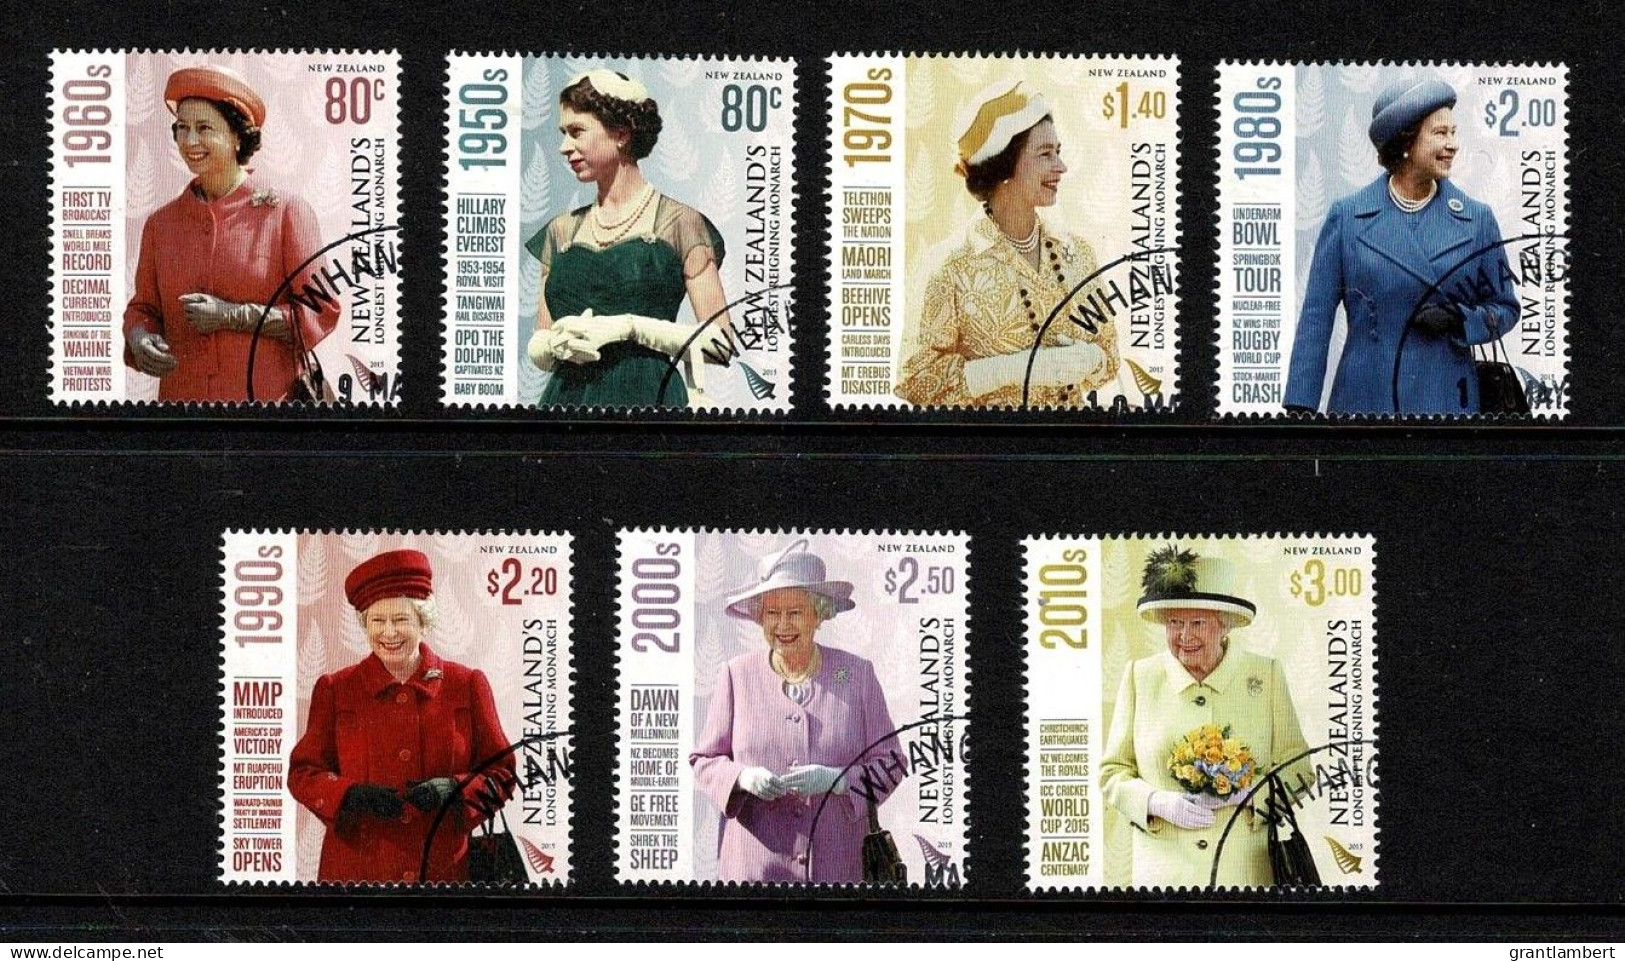 New Zealand 2015 Queen Elizabeth - Longest Reigning Monarch  Set Of 7 Used - Oblitérés